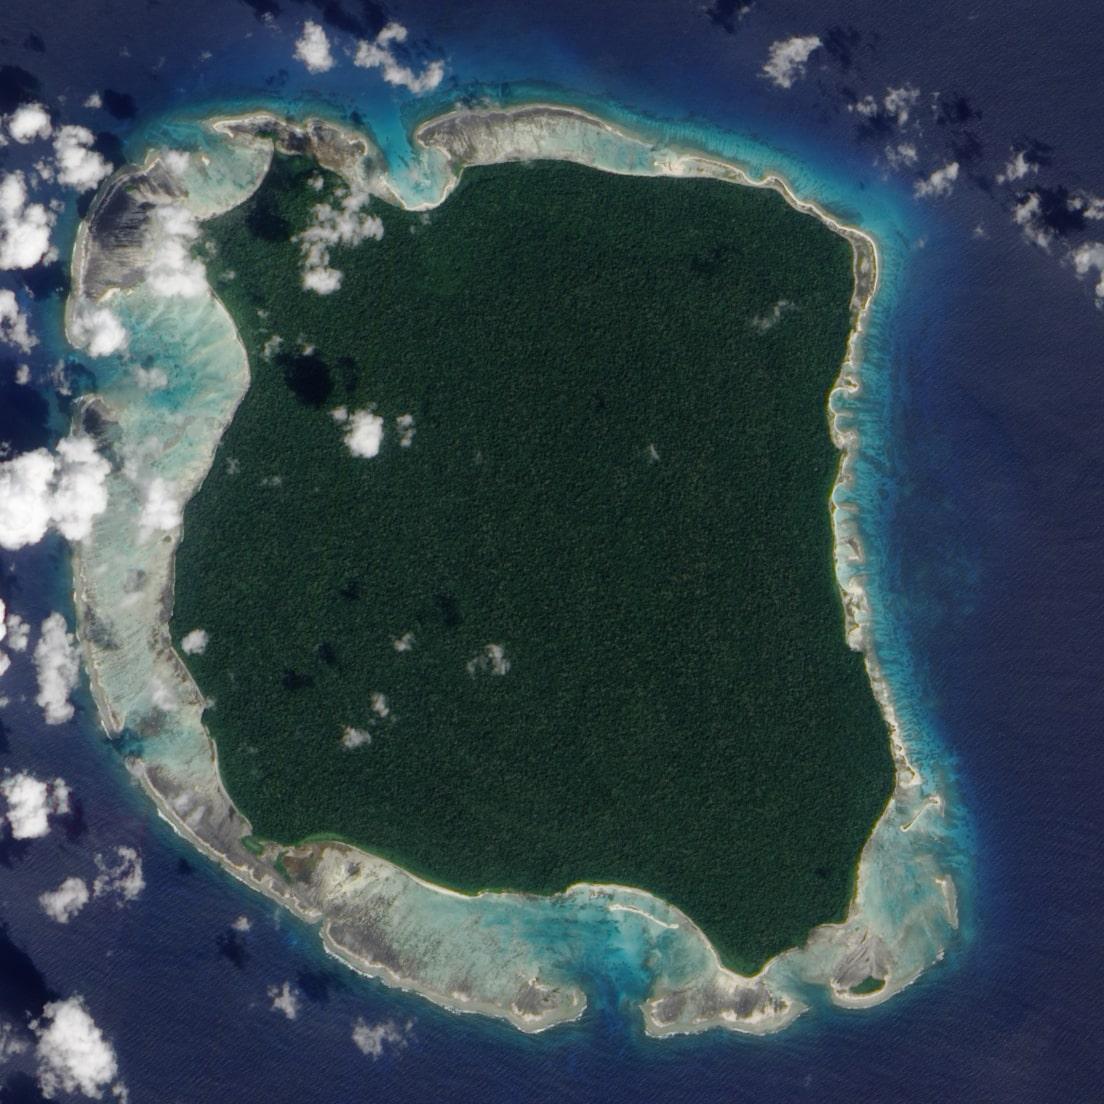 1 min 76 - Đảo Bắc Sentinel: Nơi sinh sống của một trong những giống người nguyên thủy nhất hành tinh